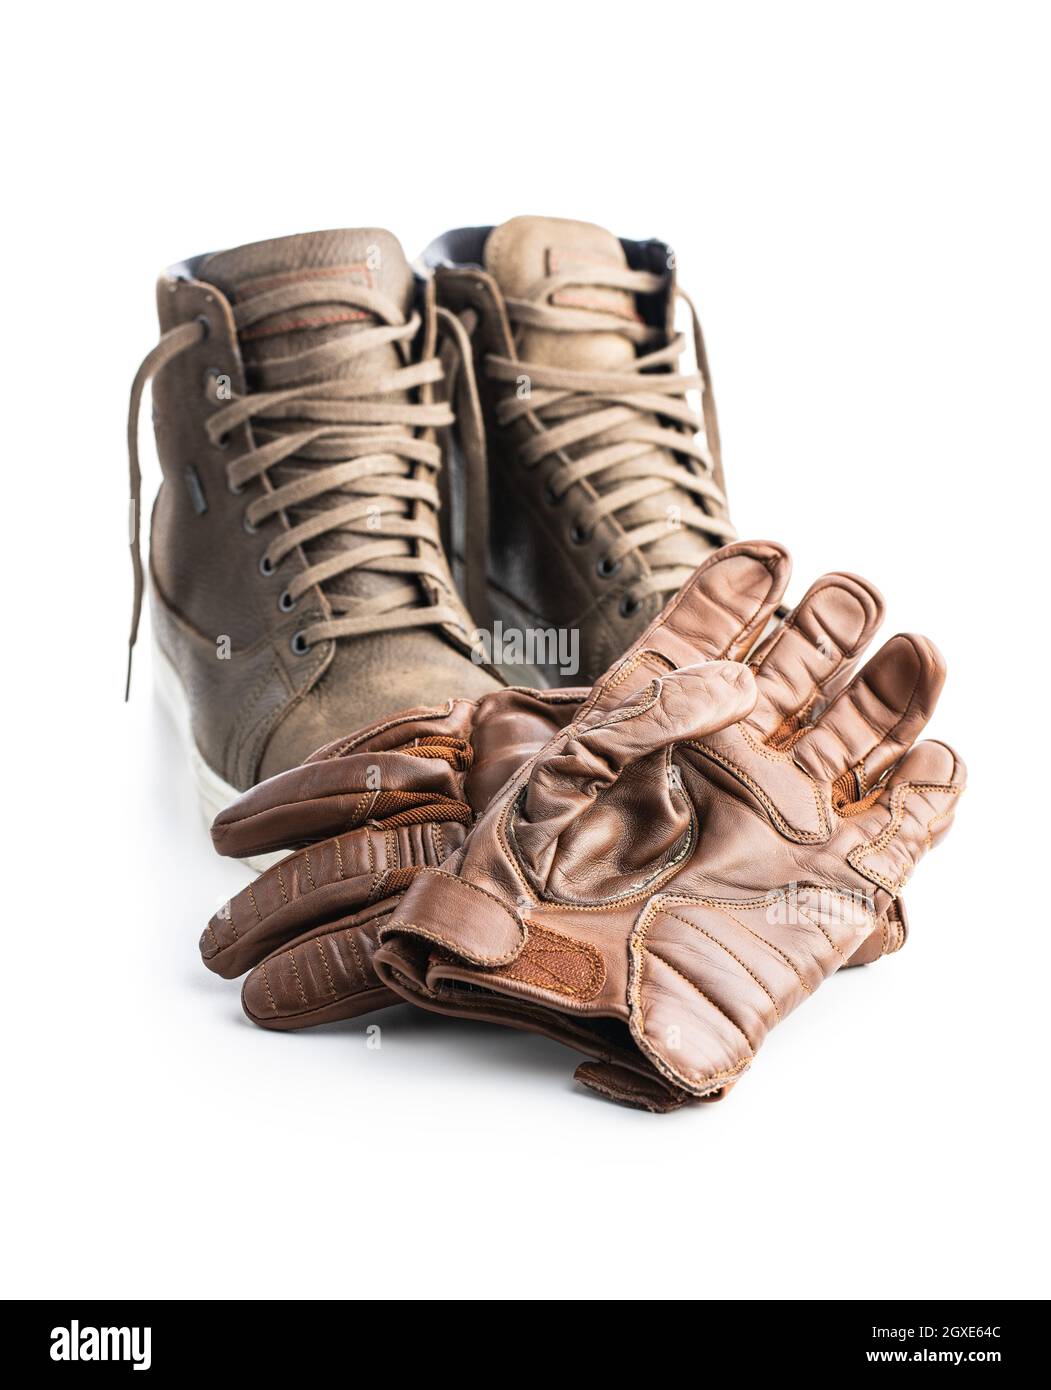 Guanti scarpe Immagini senza sfondo e Foto Stock ritagliate - Alamy